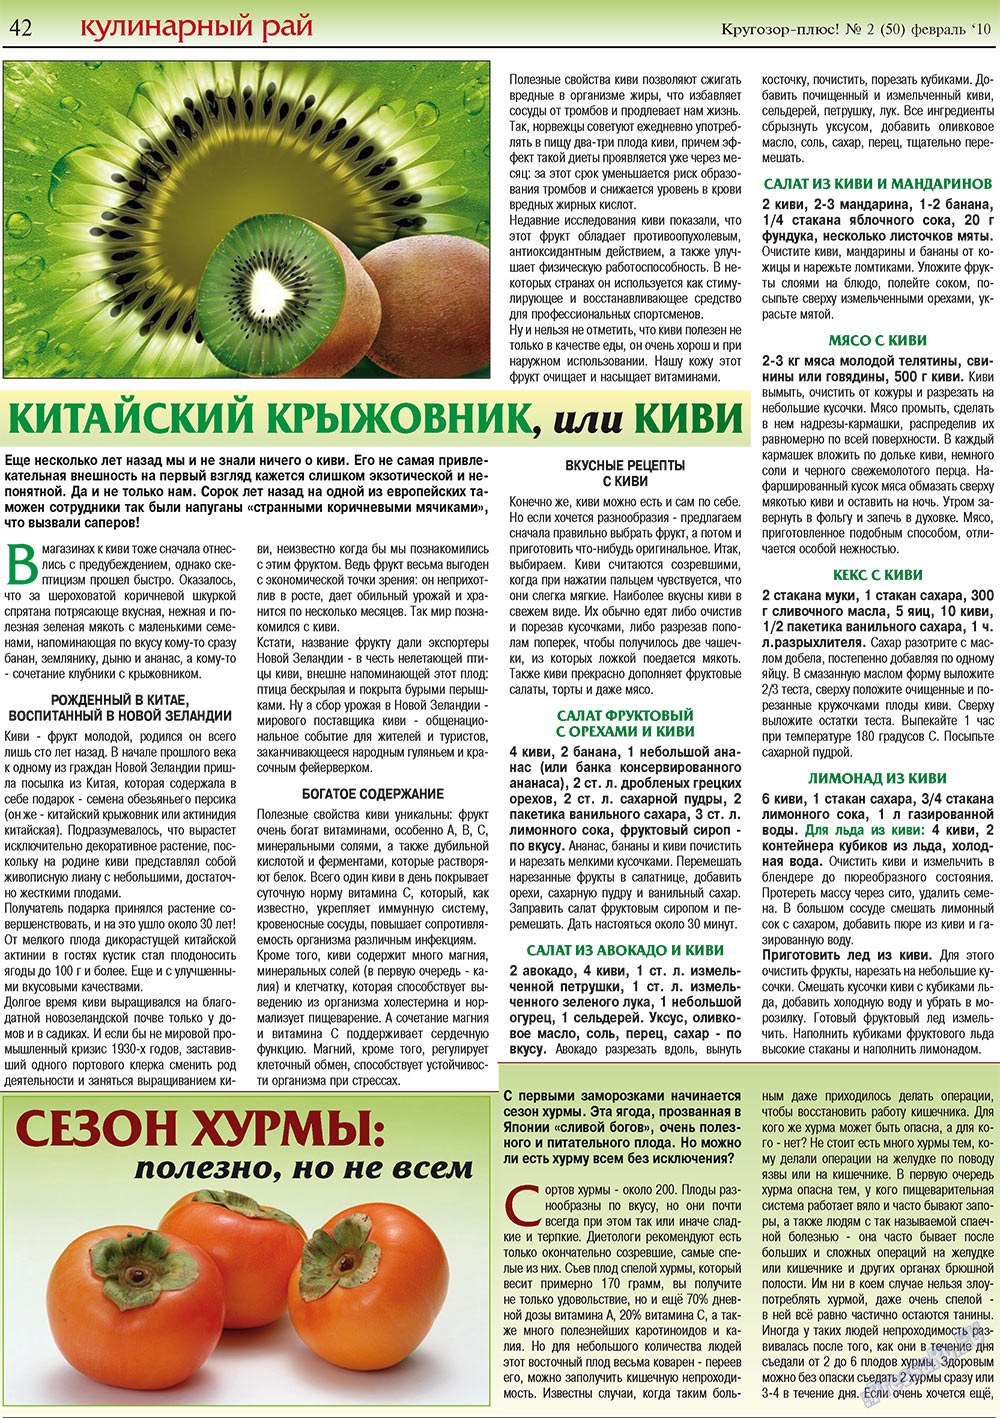 Кругозор плюс!, газета. 2010 №2 стр.42